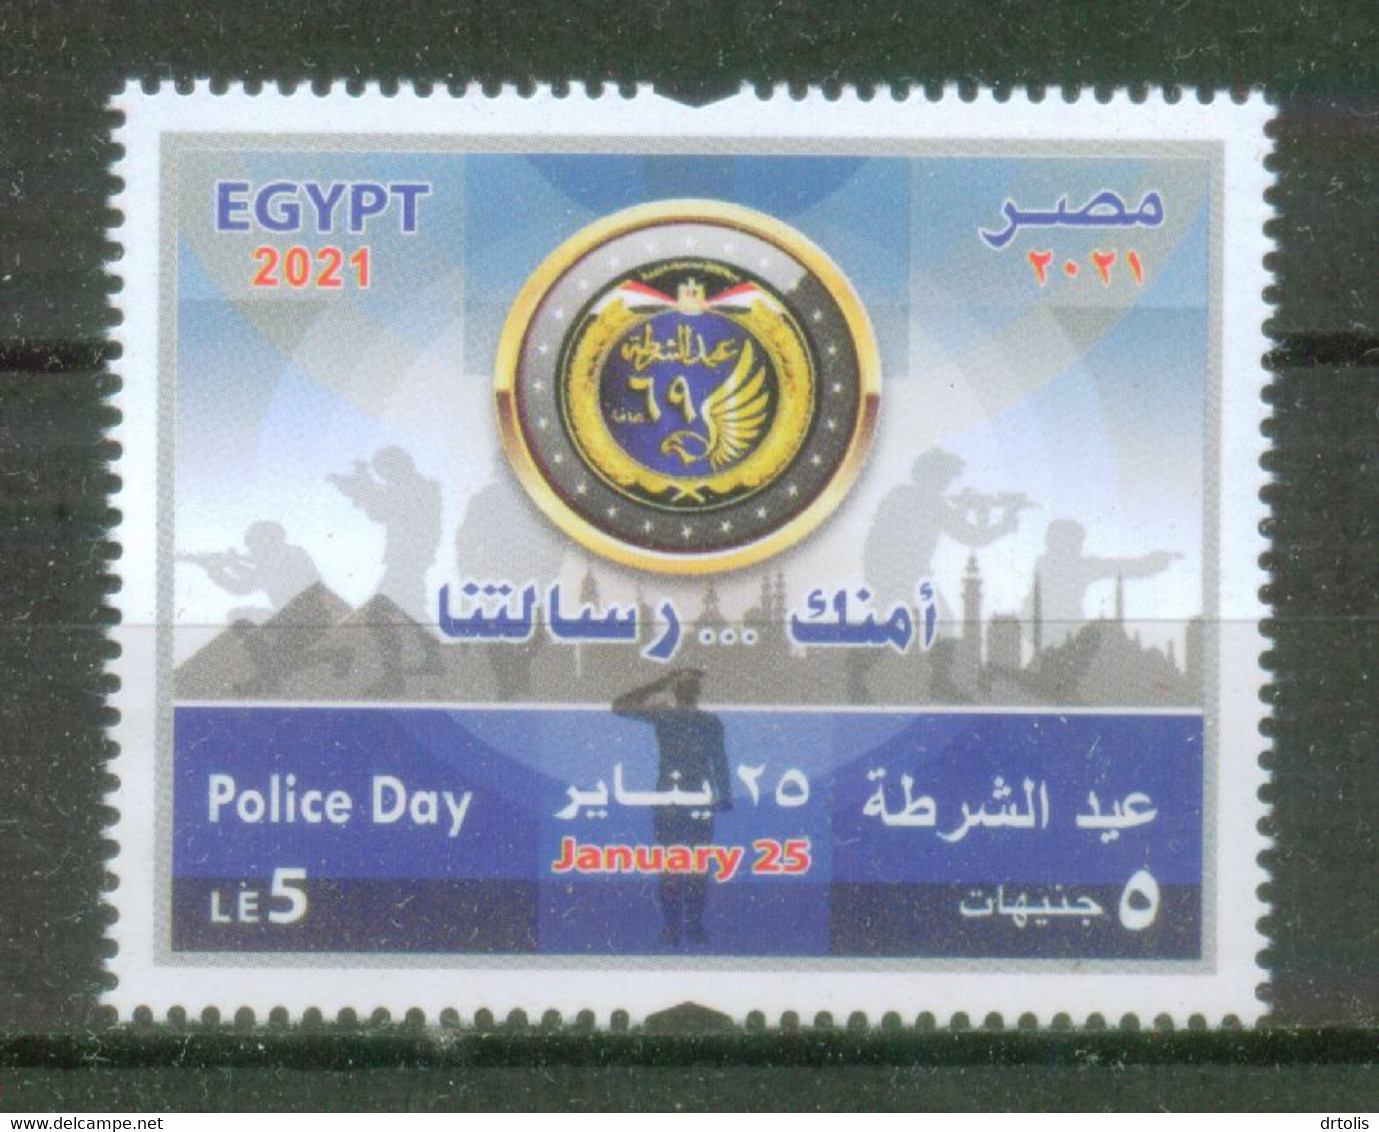 EGYPT / 2021 / POLICE DAY / PYRAMIDS / FLAG / MOSQUE / CAIRO TOWER / CAIRO CITADEL / SOLDIER / GUN / EAGLE EMBLEM / MNH - Ongebruikt